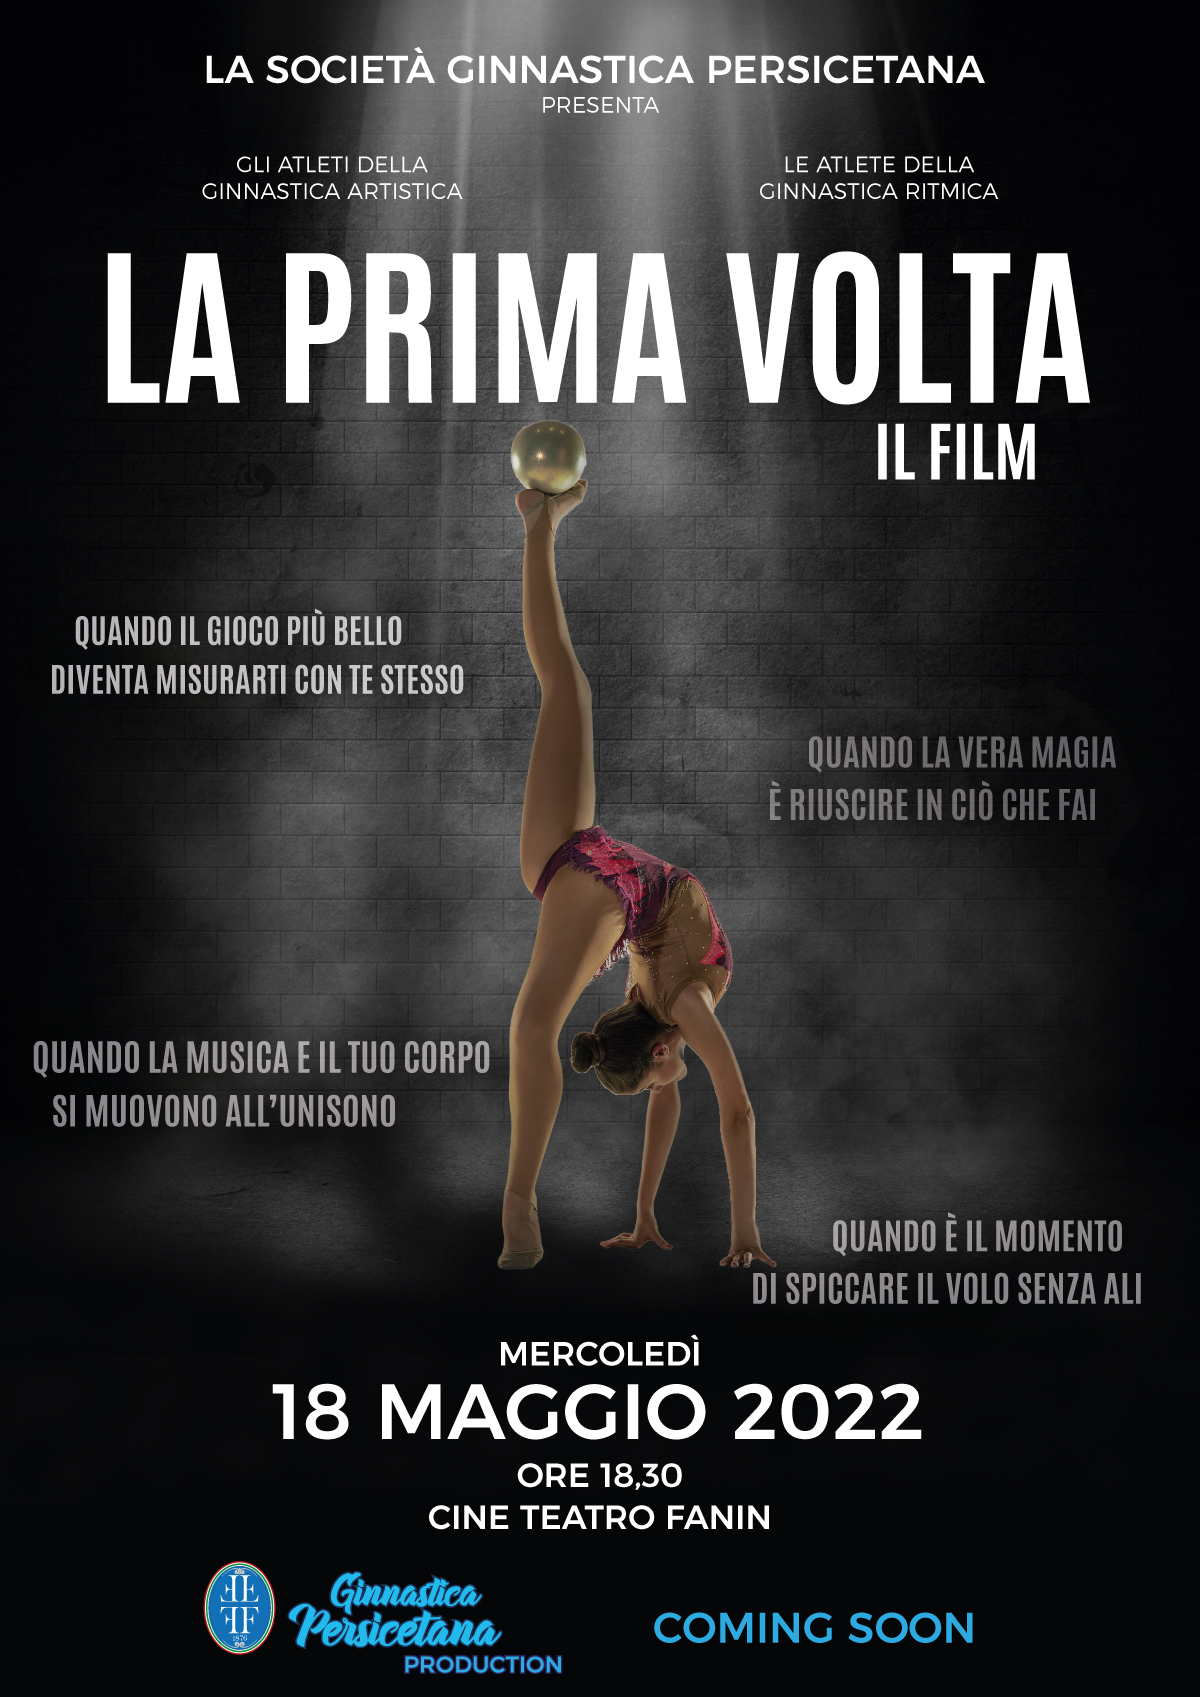 Saggio 2022: Va in scena la proiezione del film “LA PRIMA VOLTA”